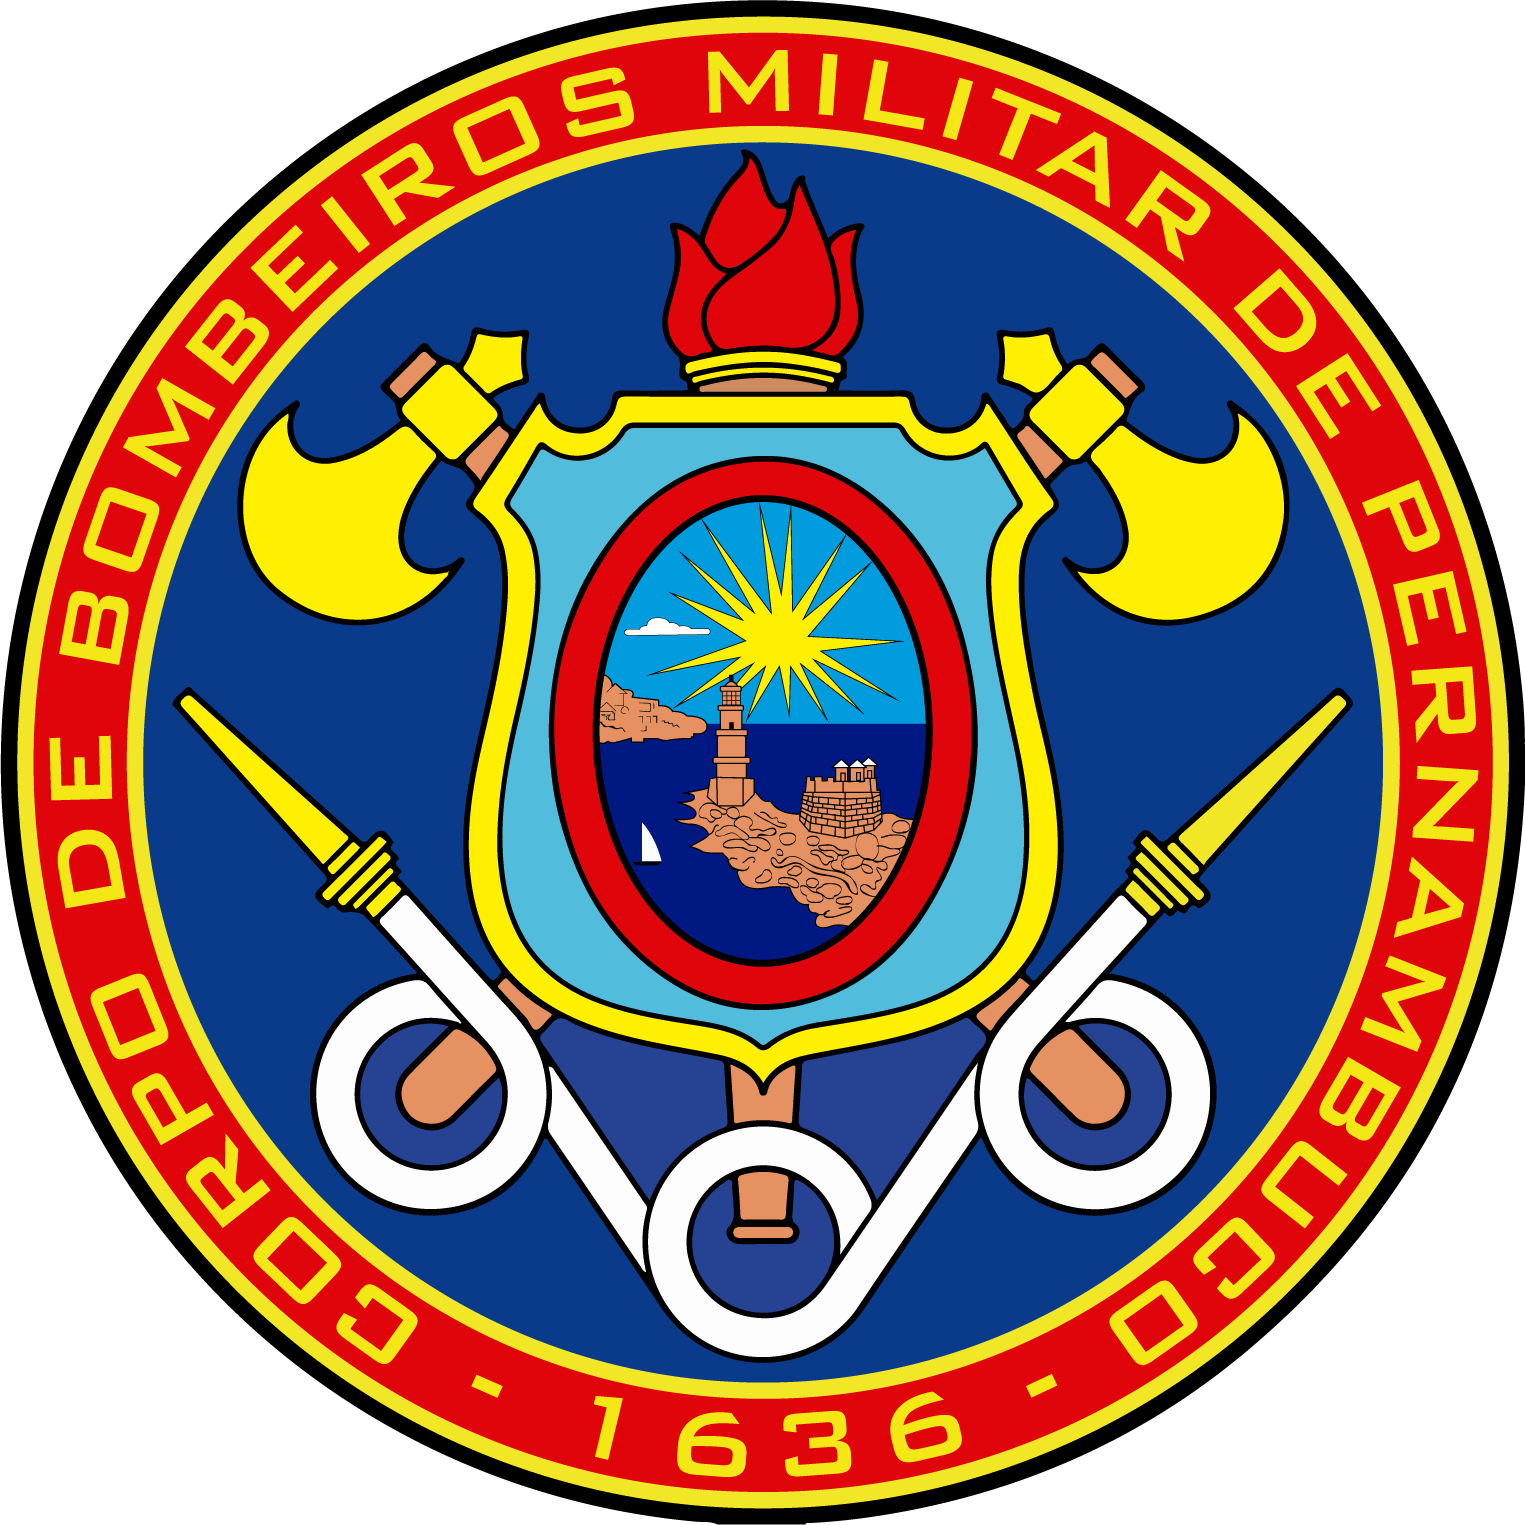 Corpo de Bombeiros Militar de Pernambuco